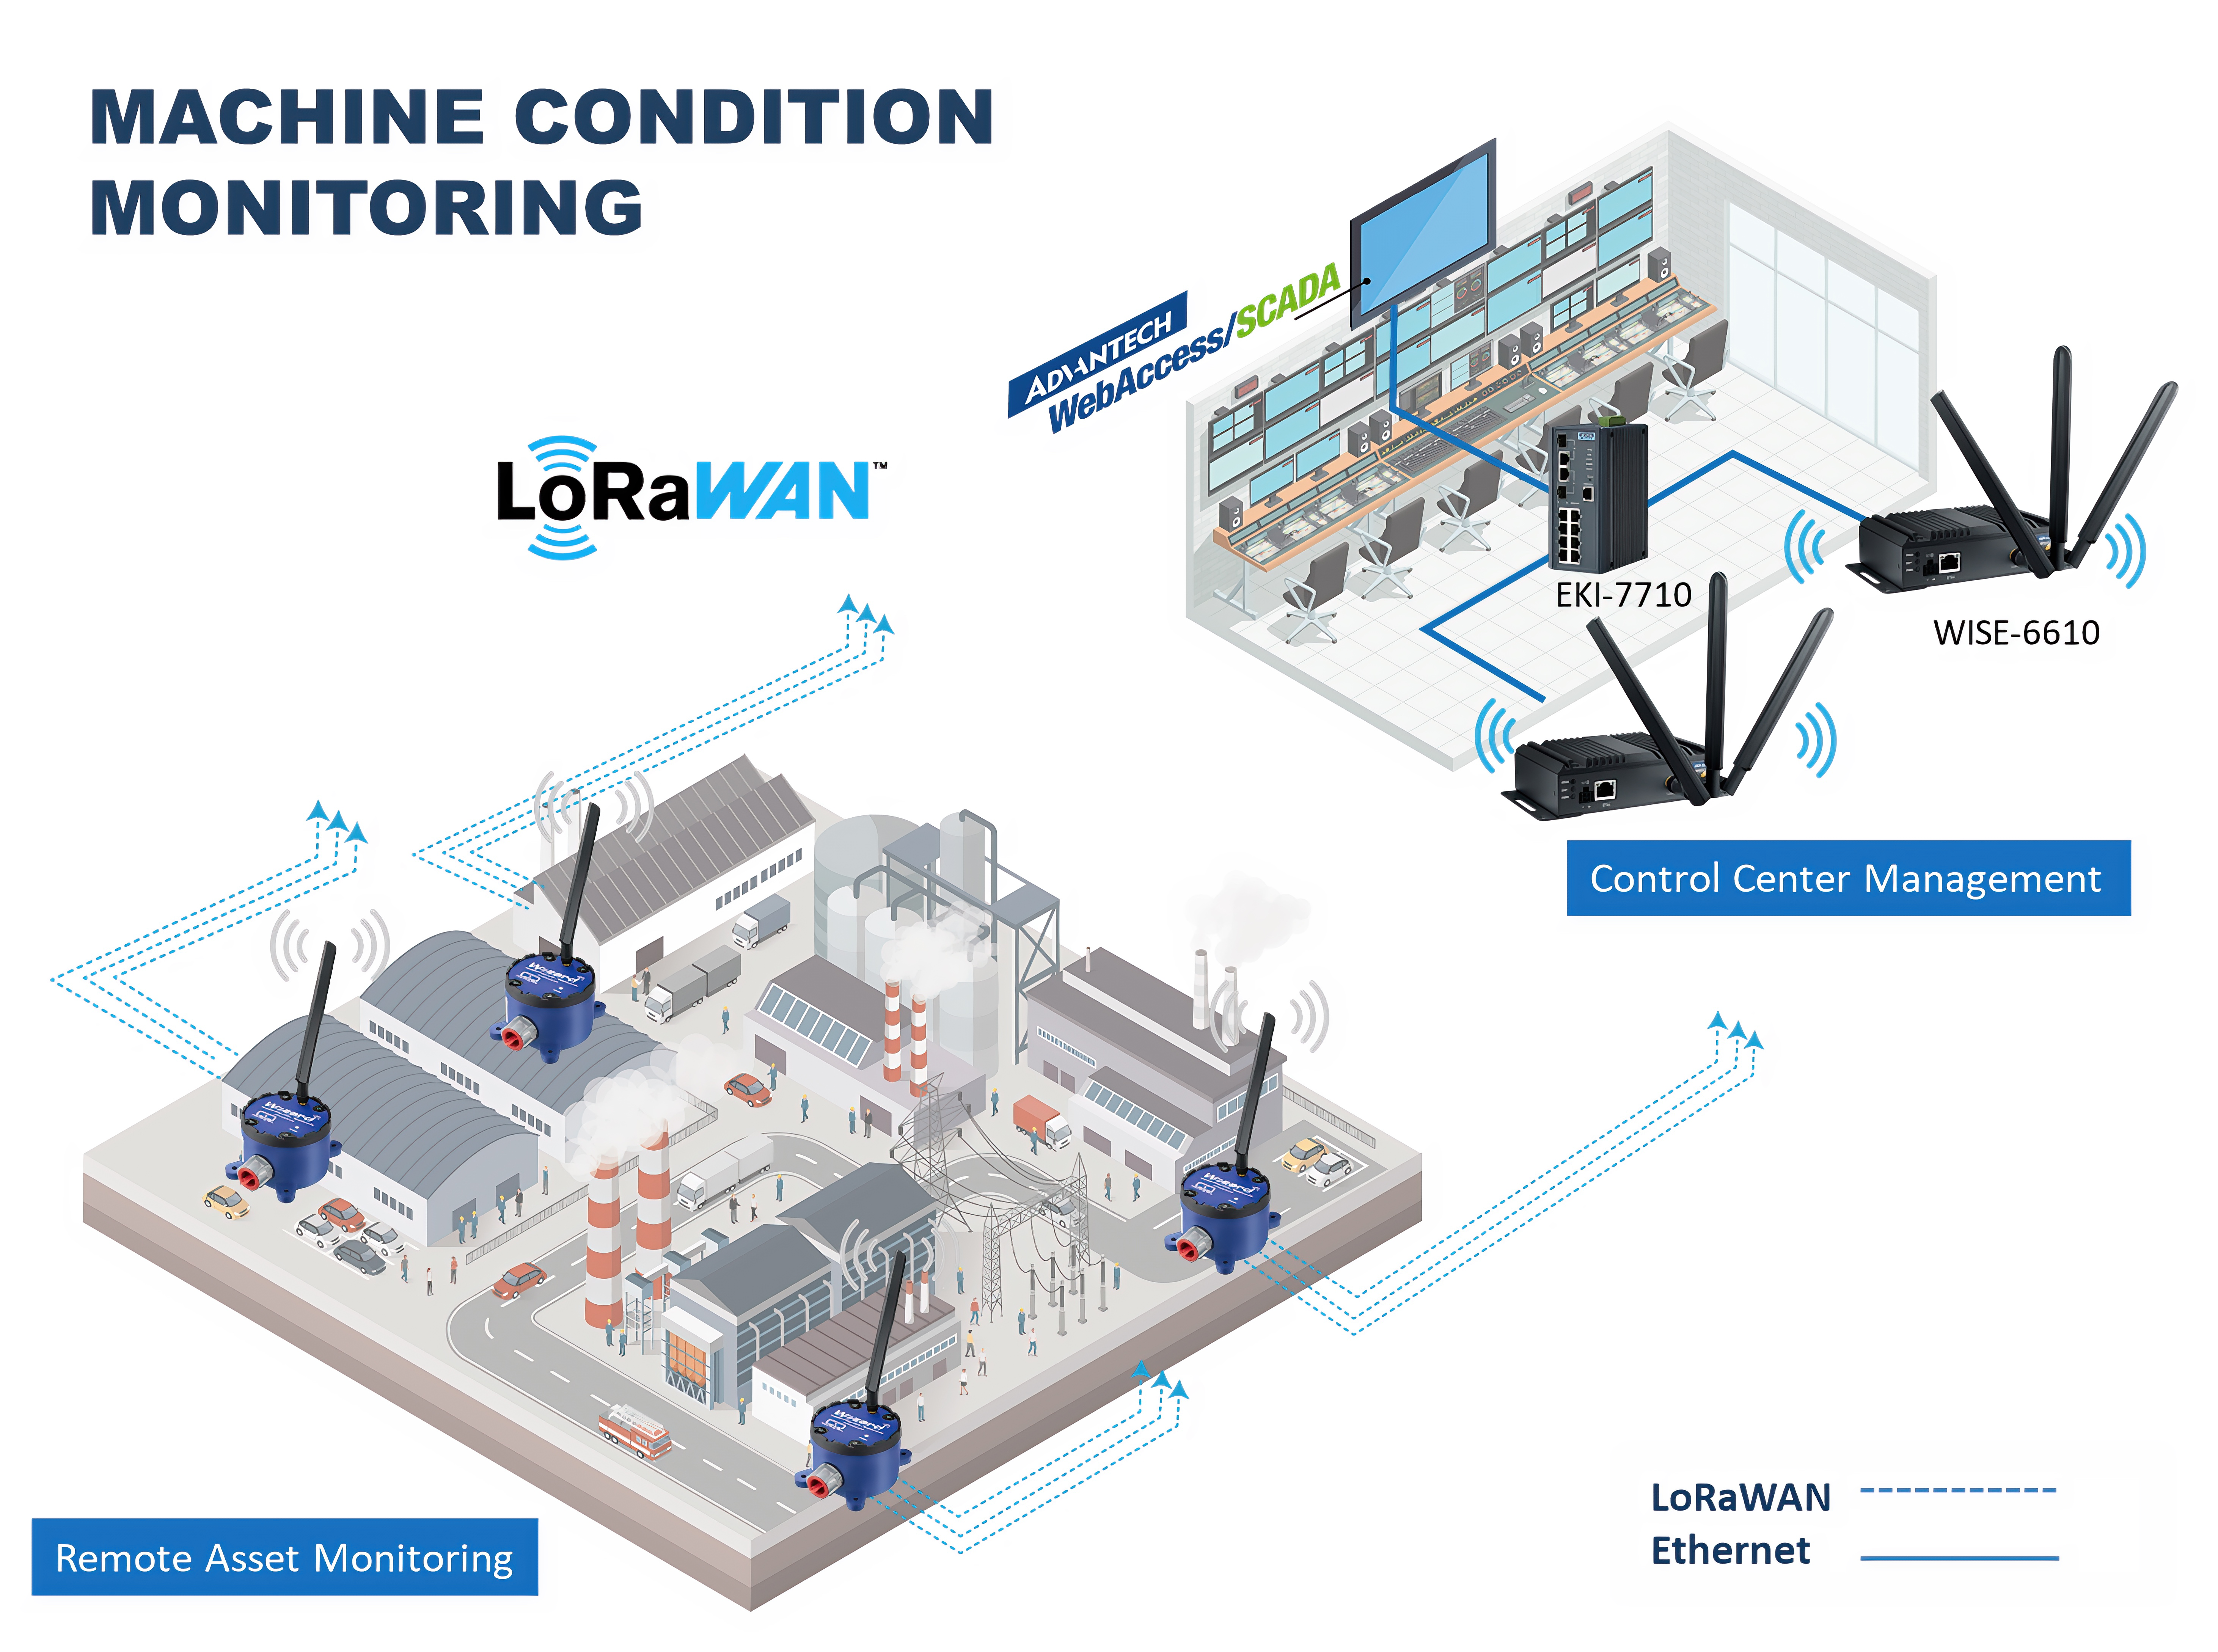 Vorausschauende Instandhaltung (Predictive Maintenance) mit LoRaWAN-IoT-Modulen